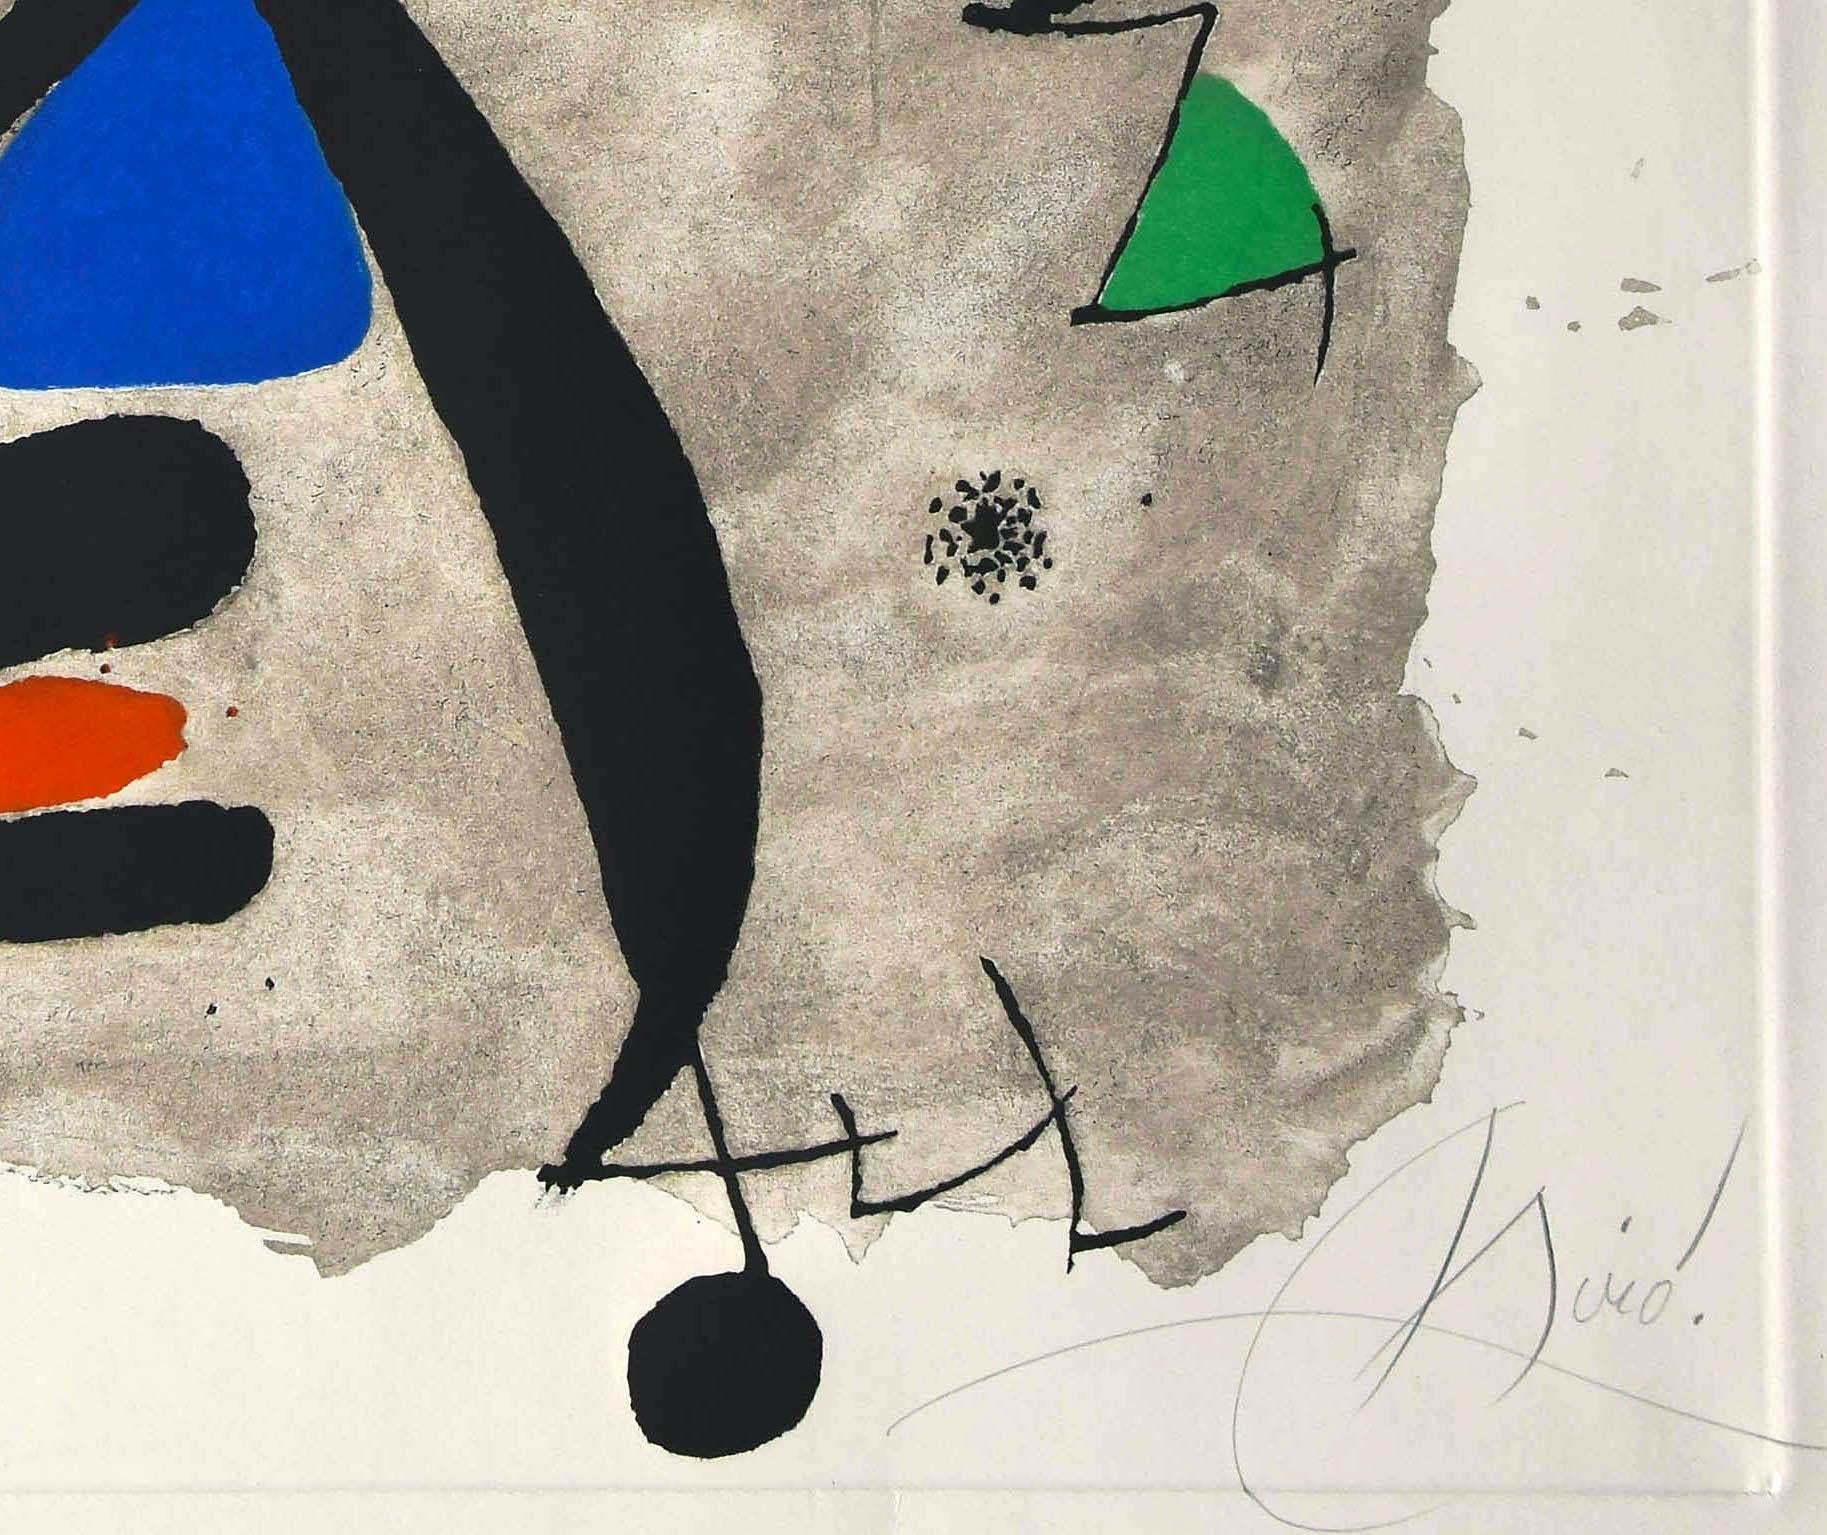 Constellation III - Original Etching by Joan Mirò - 1975 - Surrealist Print by Joan Miró